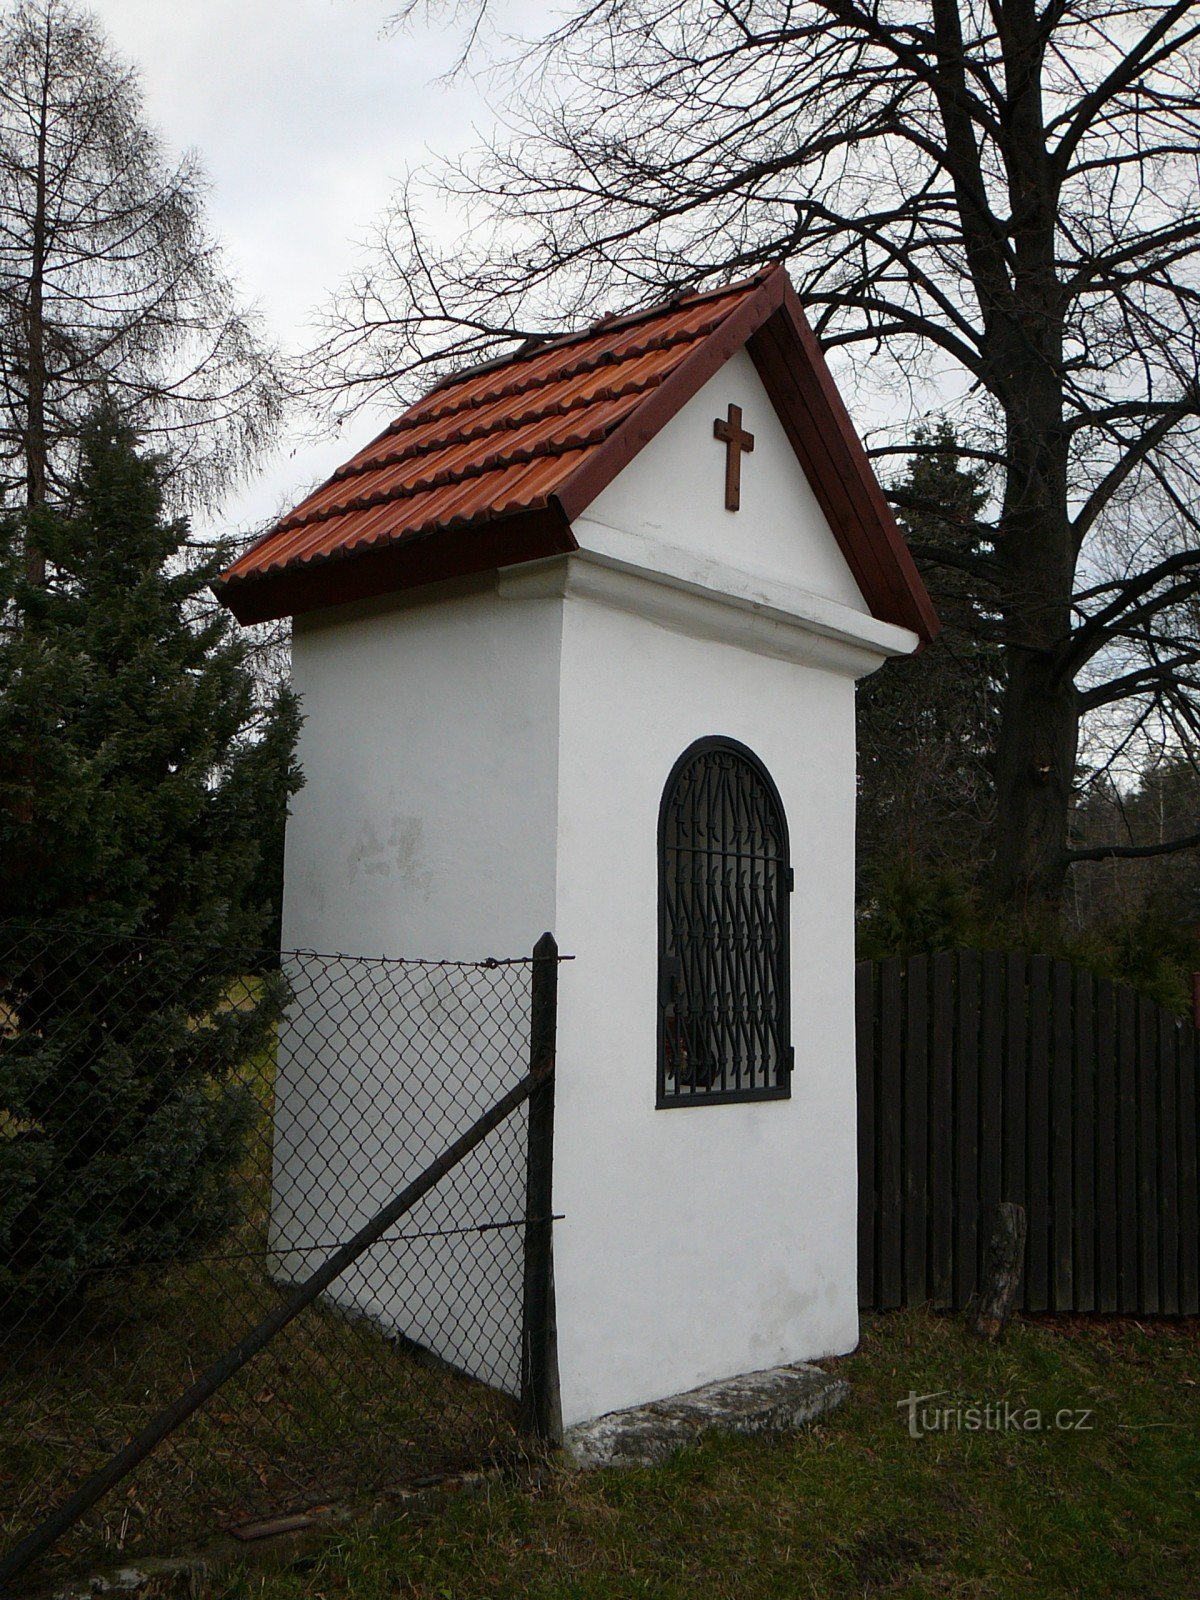 Palkovské Hůrky 2 的圣母玛利亚教堂